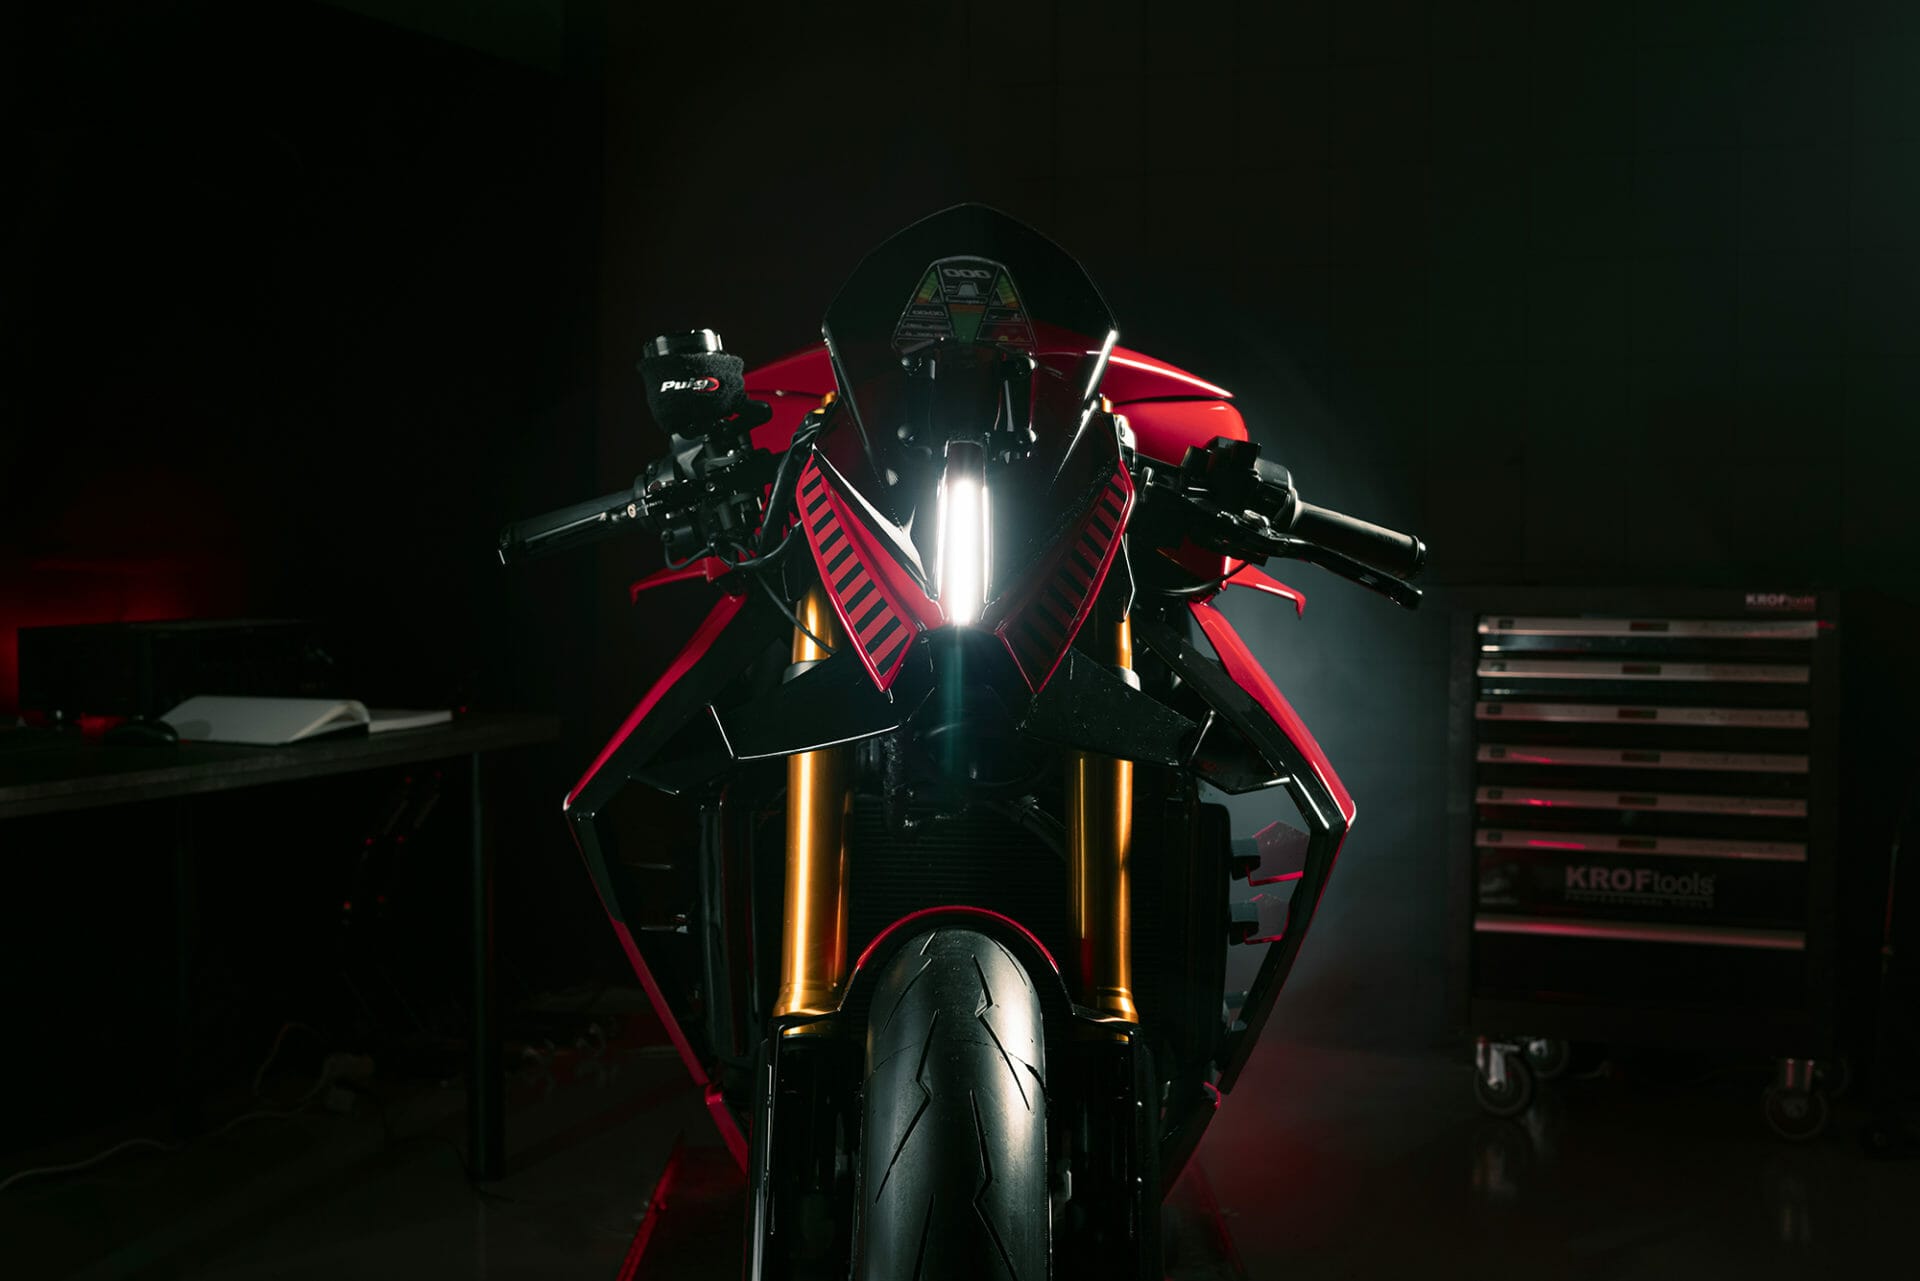 Puig verwandelt Naked-Bike in futuristisches Superbike – Puig Diablo
- MOTORCYCLES.NEWS